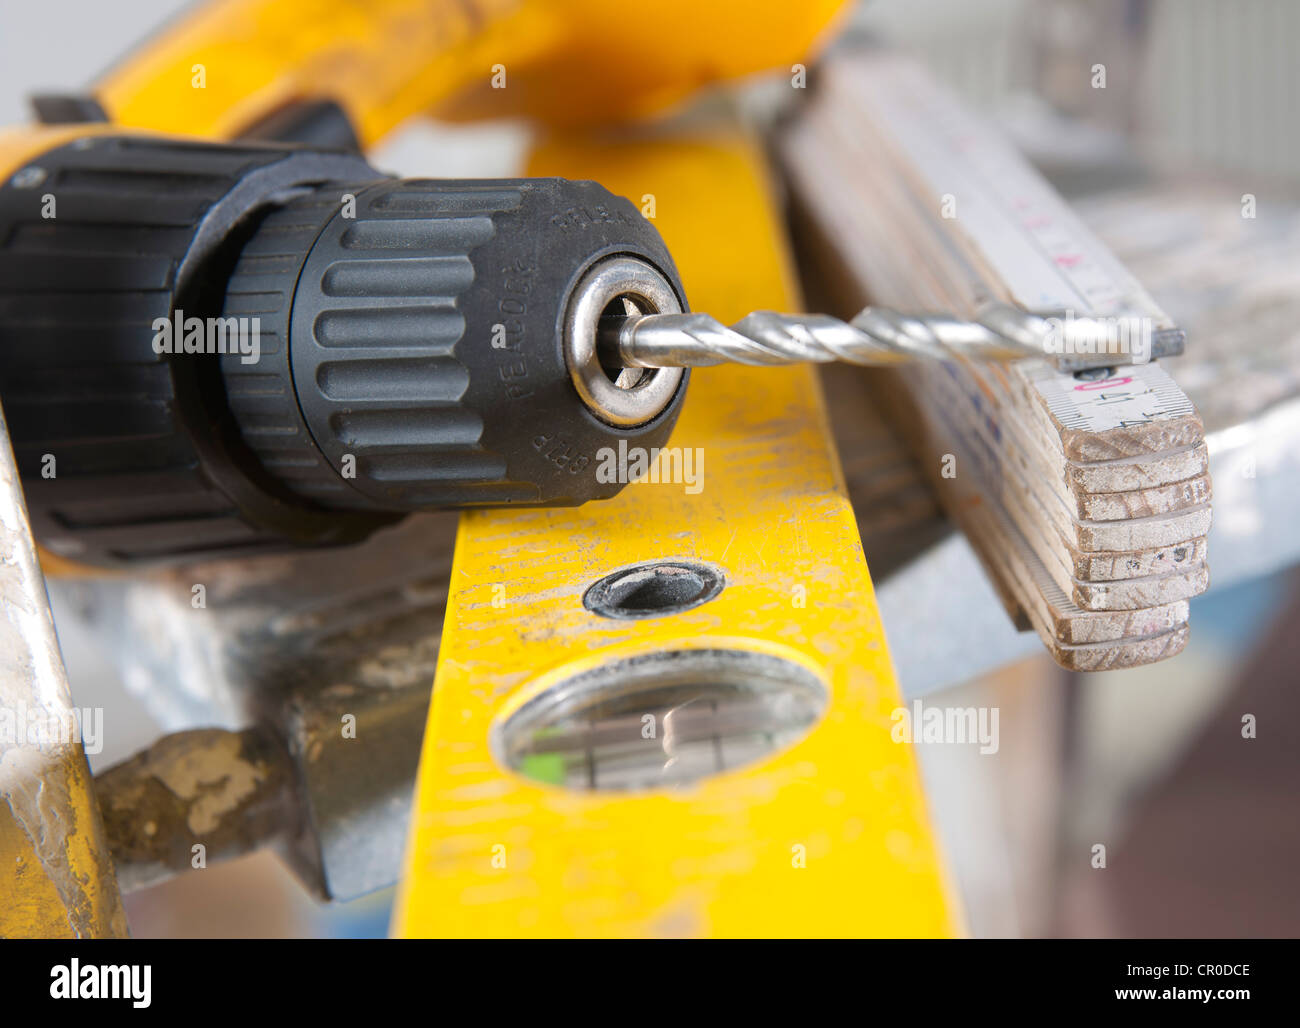 Bohrmaschine, Wasserwaage und eine klappbare Zimmermann Herrscher  Stockfotografie - Alamy